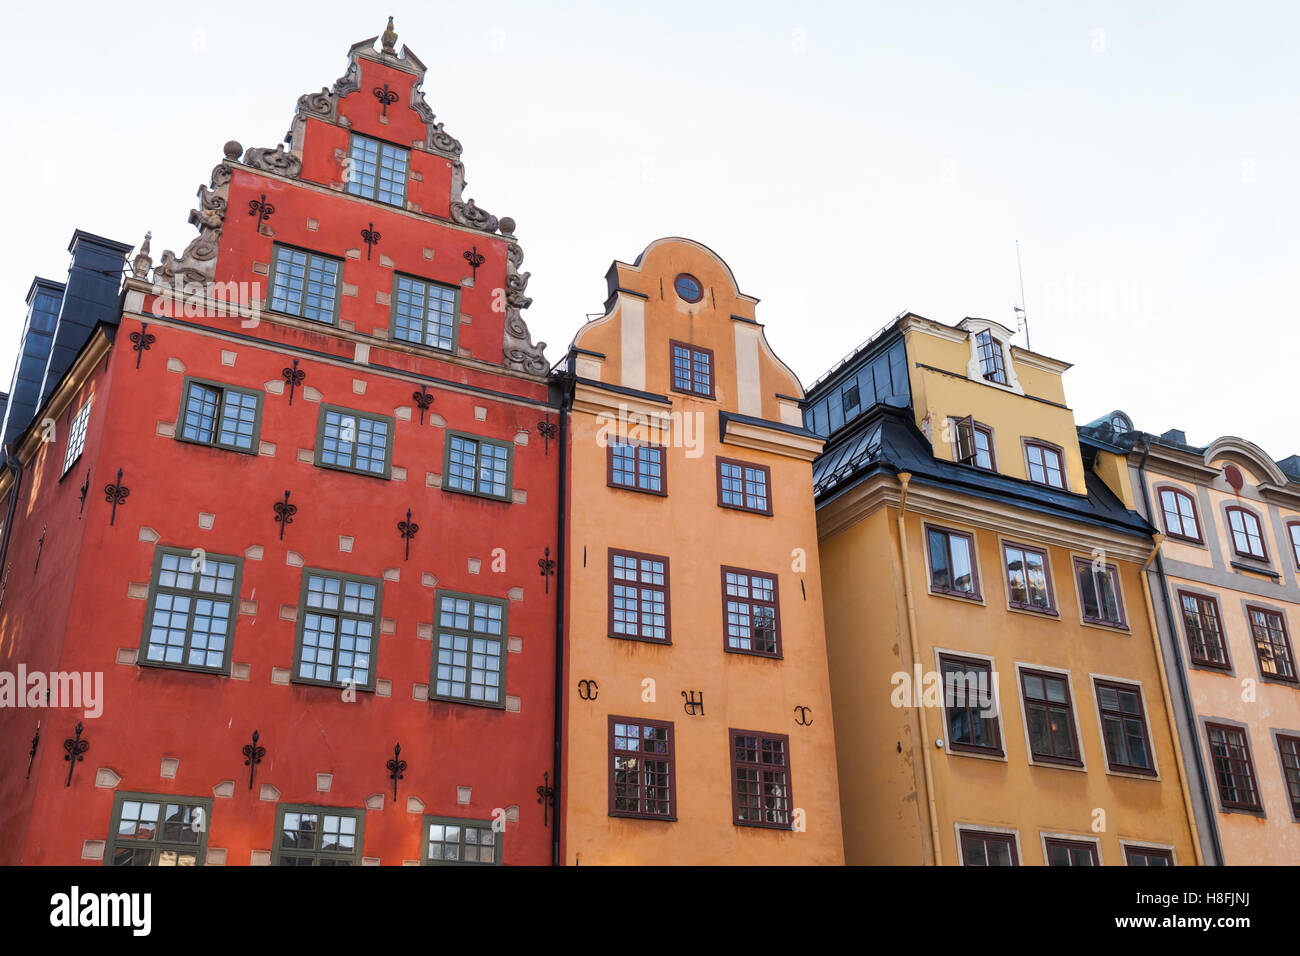 Bunte Häuser am Stortorget, ein kleinen öffentlichen Platz auf Insel Gamla Stan, die Altstadt mitten in Stockholm, Schweden Stockfoto